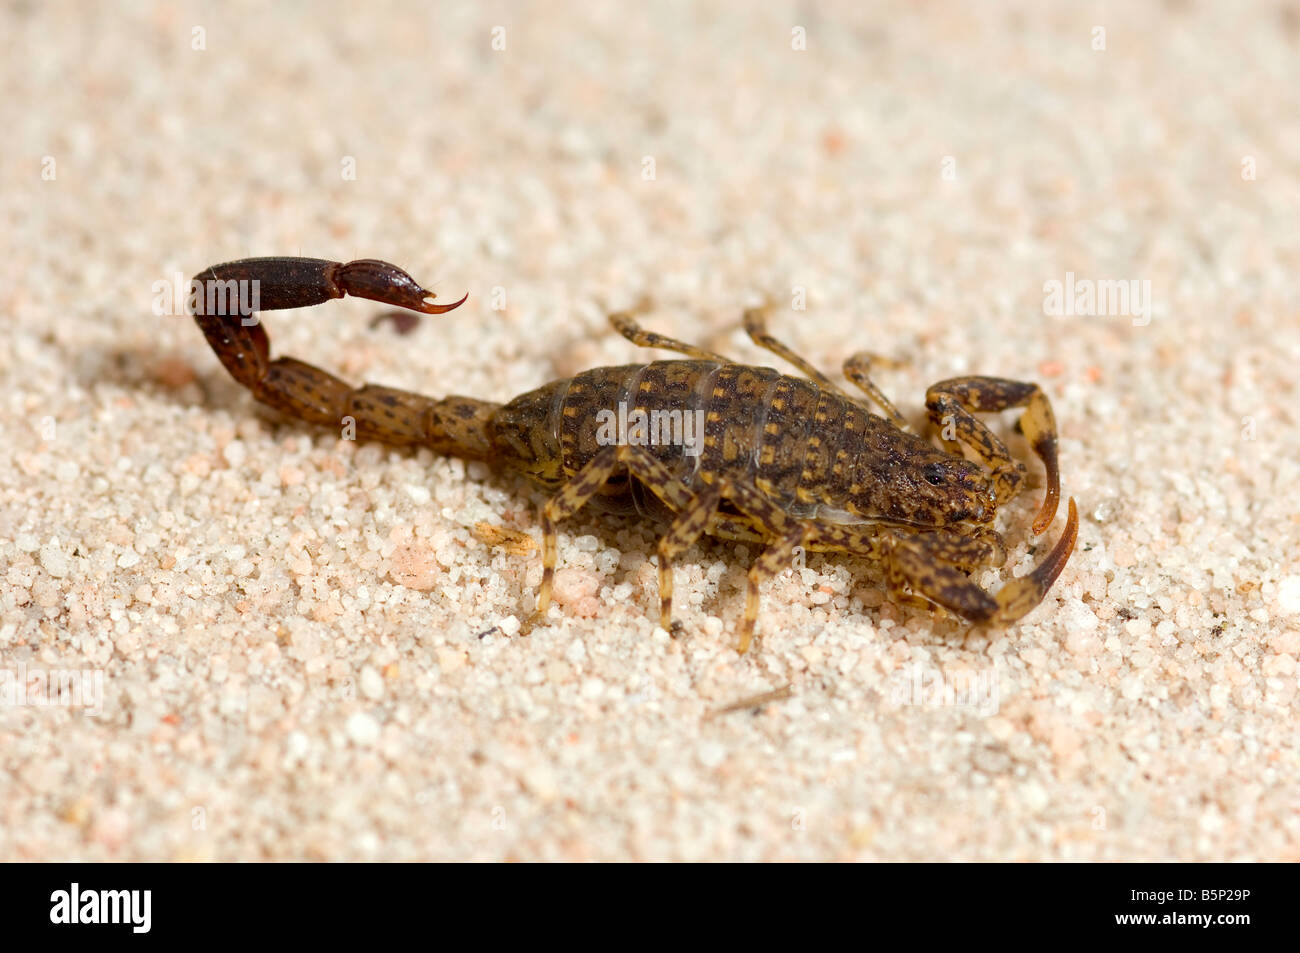 Australian little marbled scorpion Stock Photo